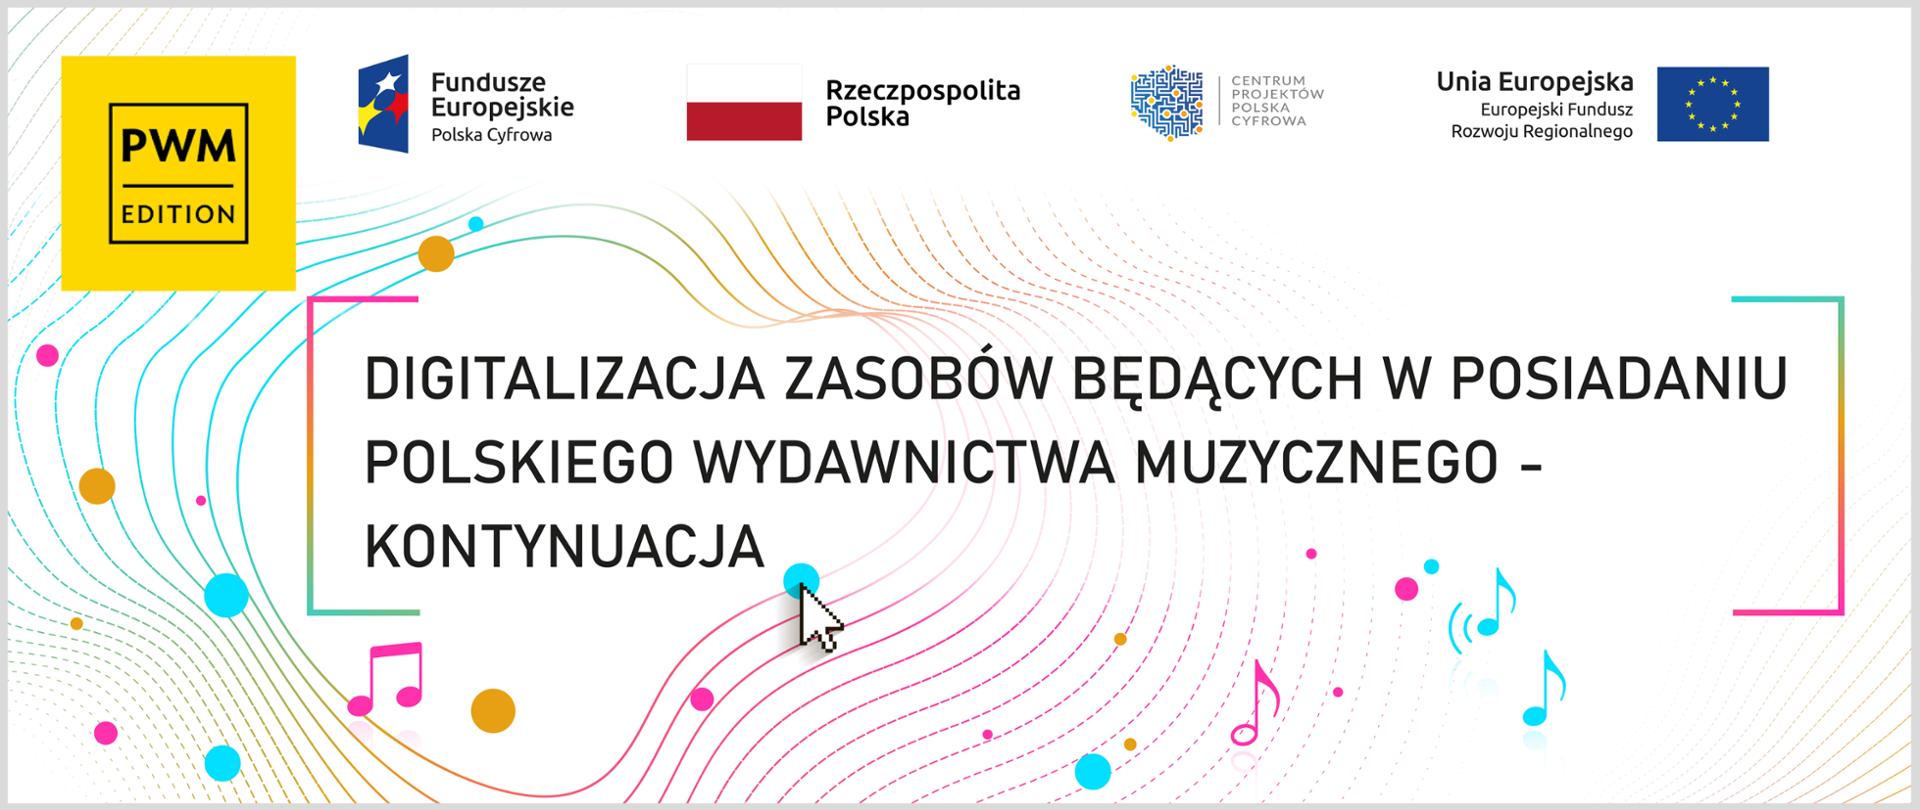 Digitalizacja zasobów będących w posiadaniu Polskiego Wydawnictwa Muzycznego - kontynuacja